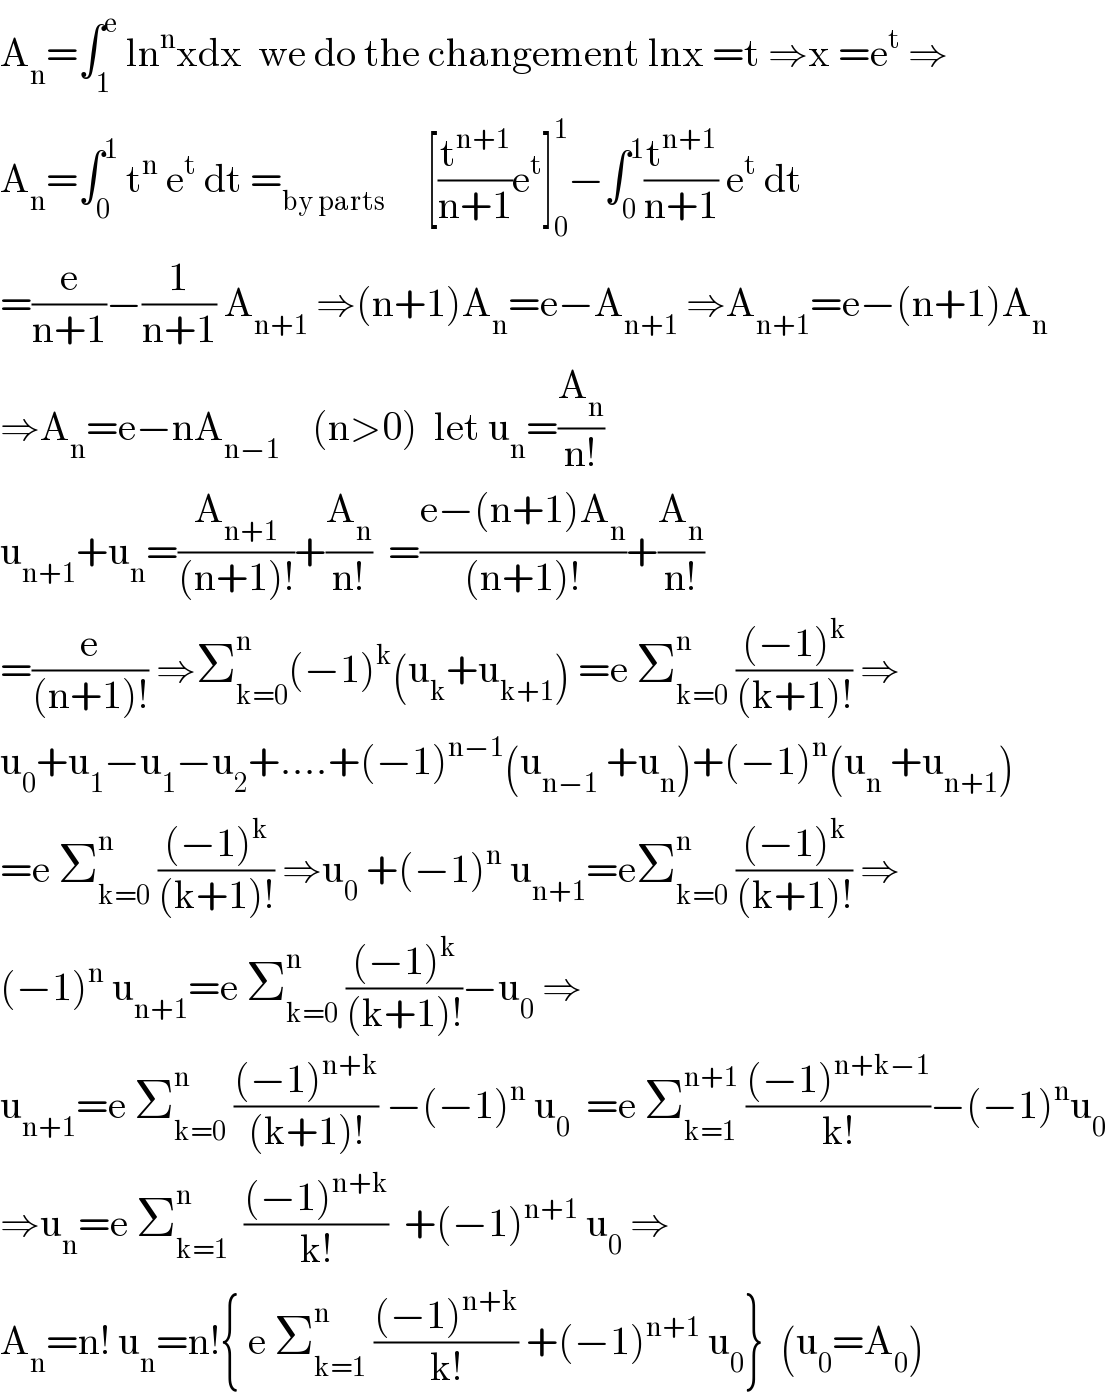 A_n =∫_1 ^e  ln^n xdx  we do the changement lnx =t ⇒x =e^t  ⇒  A_n =∫_0 ^1  t^n  e^t  dt =_(by parts)      [(t^(n+1) /(n+1))e^t ]_0 ^1 −∫_0 ^1 (t^(n+1) /(n+1)) e^t  dt  =(e/(n+1))−(1/(n+1)) A_(n+1)  ⇒(n+1)A_n =e−A_(n+1)  ⇒A_(n+1) =e−(n+1)A_n   ⇒A_n =e−nA_(n−1)     (n>0)  let u_n =(A_n /(n!))  u_(n+1) +u_n =(A_(n+1) /((n+1)!))+(A_n /(n!))  =((e−(n+1)A_n )/((n+1)!))+(A_n /(n!))  =(e/((n+1)!)) ⇒Σ_(k=0) ^n (−1)^k (u_k +u_(k+1) ) =e Σ_(k=0) ^n  (((−1)^k )/((k+1)!)) ⇒  u_0 +u_1 −u_1 −u_2 +....+(−1)^(n−1) (u_(n−1)  +u_n )+(−1)^n (u_n  +u_(n+1) )  =e Σ_(k=0) ^n  (((−1)^k )/((k+1)!)) ⇒u_0  +(−1)^n  u_(n+1) =eΣ_(k=0) ^n  (((−1)^k )/((k+1)!)) ⇒  (−1)^n  u_(n+1) =e Σ_(k=0) ^n  (((−1)^k )/((k+1)!))−u_0  ⇒  u_(n+1) =e Σ_(k=0) ^n  (((−1)^(n+k) )/((k+1)!)) −(−1)^n  u_0   =e Σ_(k=1) ^(n+1)  (((−1)^(n+k−1) )/(k!))−(−1)^n u_0   ⇒u_n =e Σ_(k=1) ^n   (((−1)^(n+k) )/(k!))  +(−1)^(n+1)  u_0  ⇒  A_n =n! u_n =n!{ e Σ_(k=1) ^n  (((−1)^(n+k) )/(k!)) +(−1)^(n+1)  u_0 }  (u_0 =A_0 )  